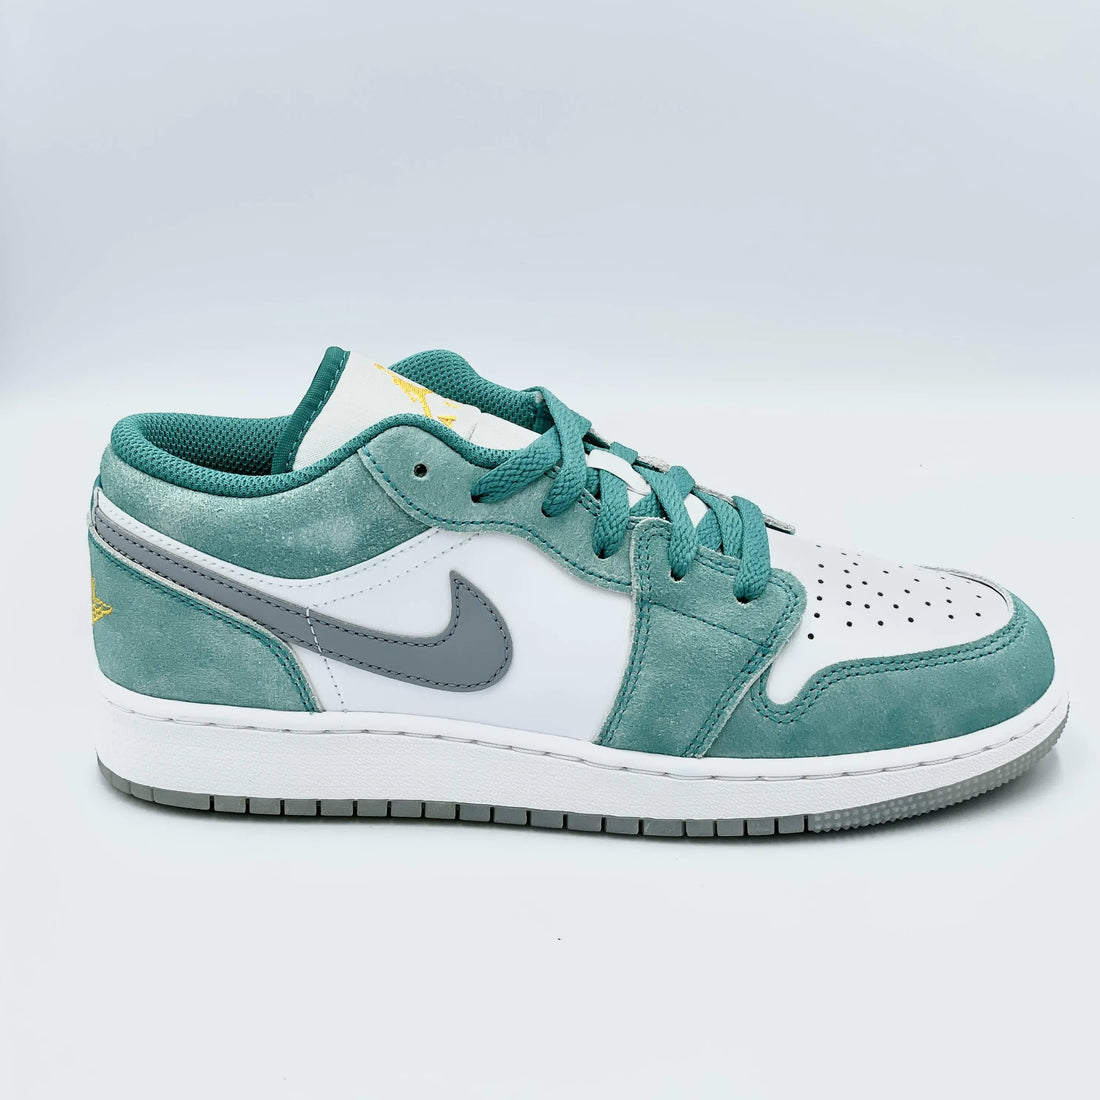 Jordan 1 Low SE New Emerald  SA Sneakers